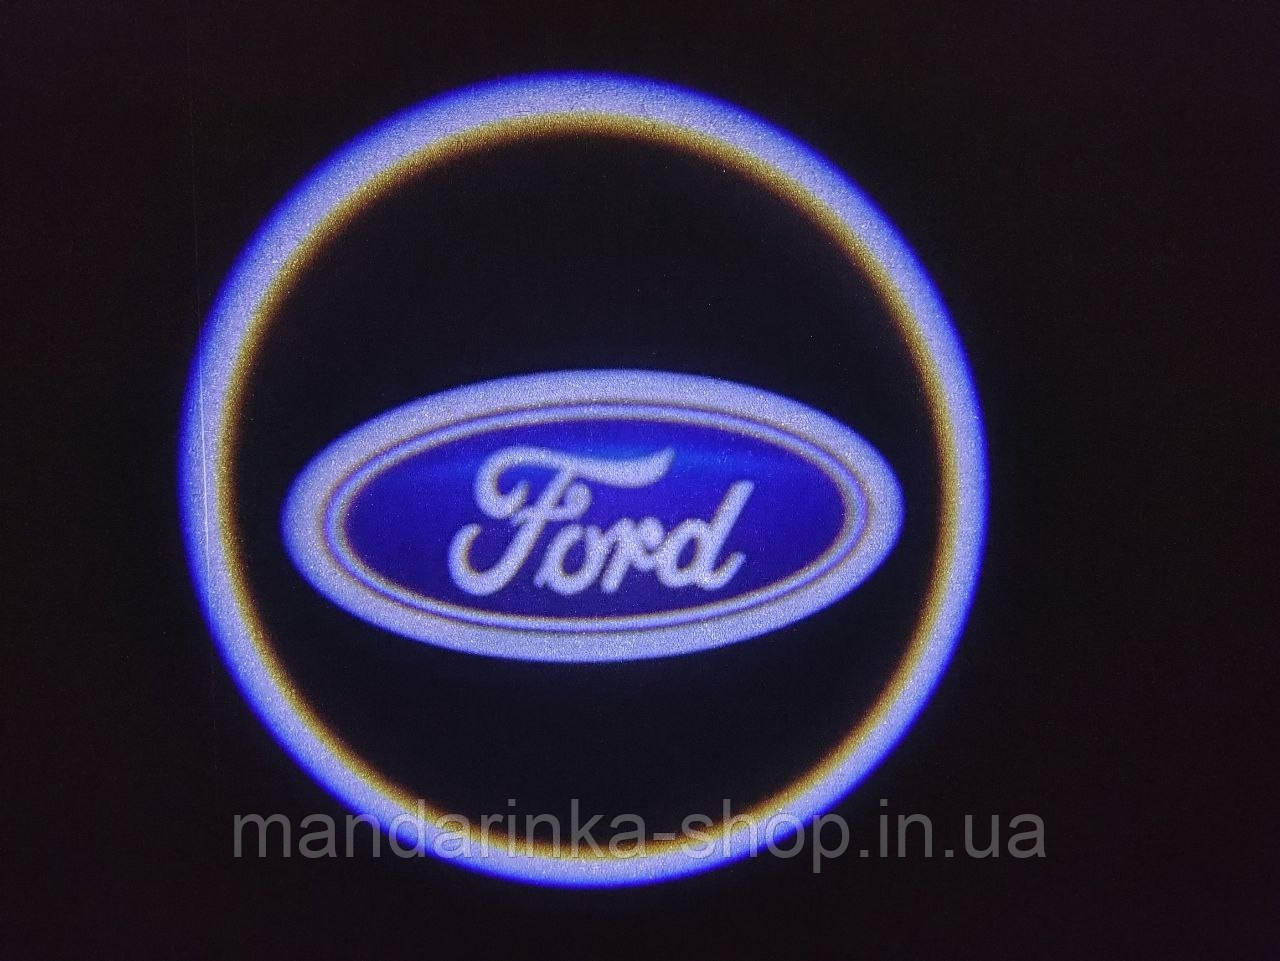 Світлодіодне підсвічування на дверях автомобіля з логотипом Ford